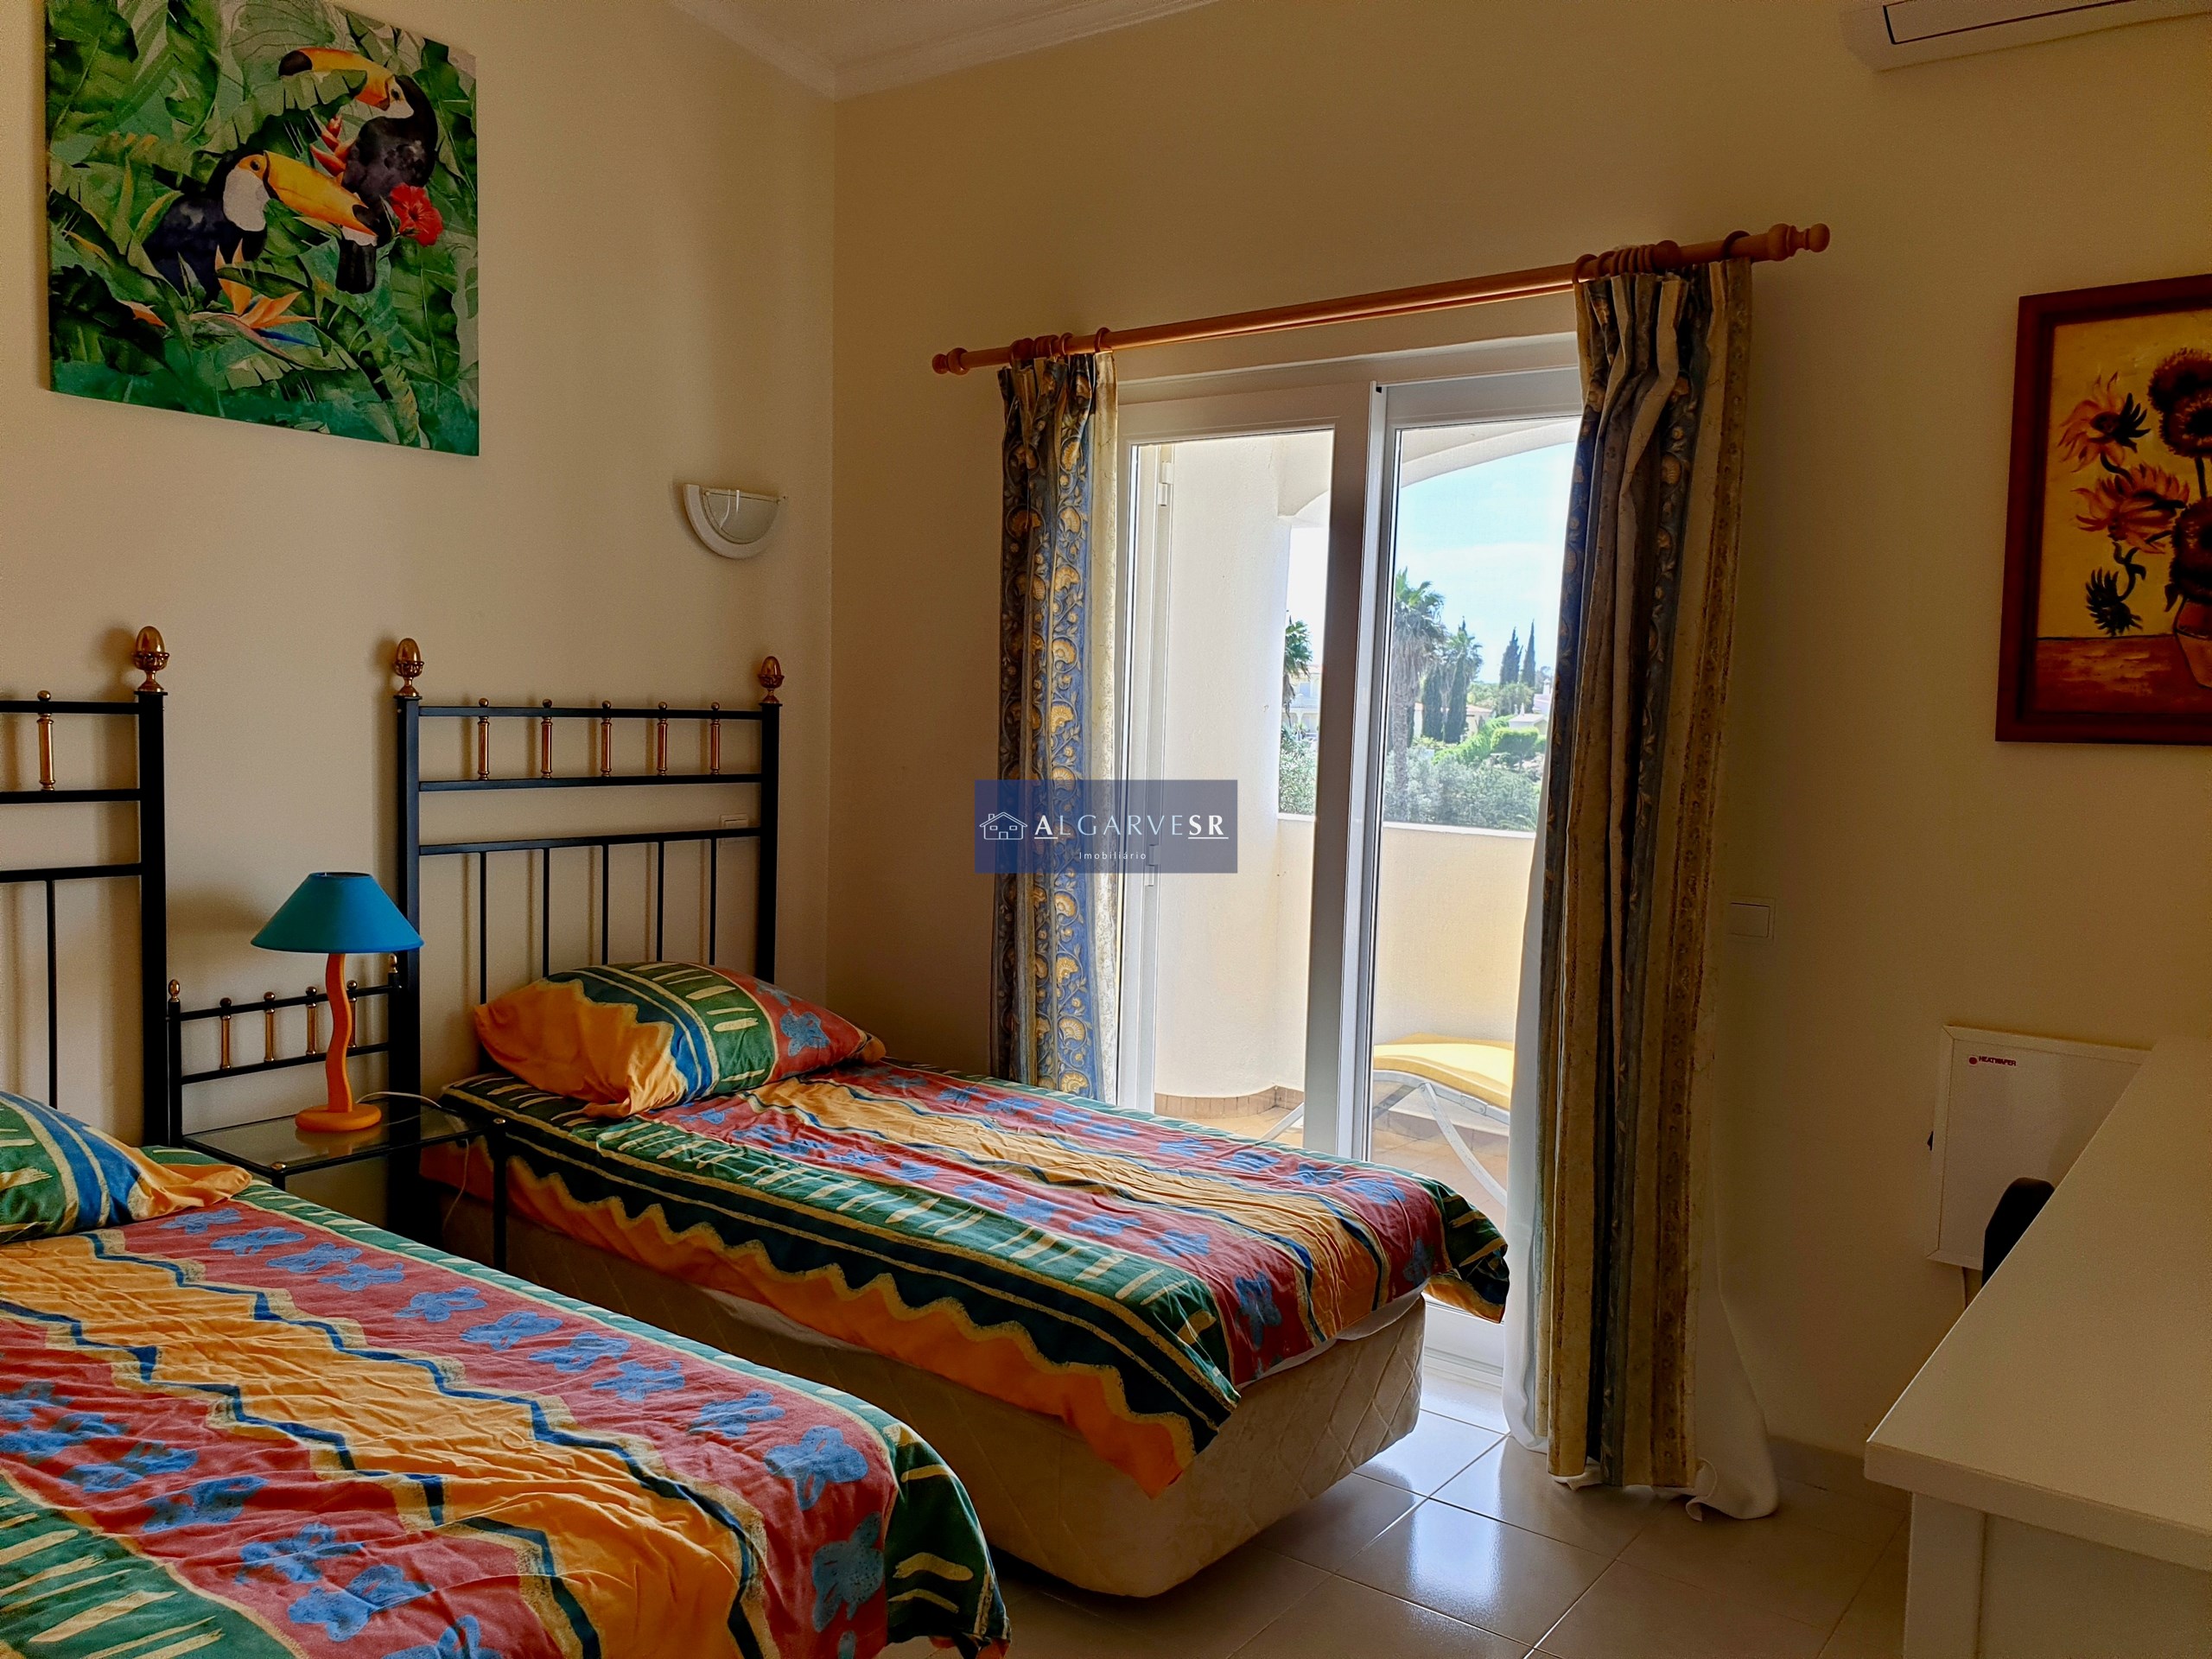 Carvoeiro, Golfemar, Apartment mit zwei Schlafzimmern, Golf- und Meerblick